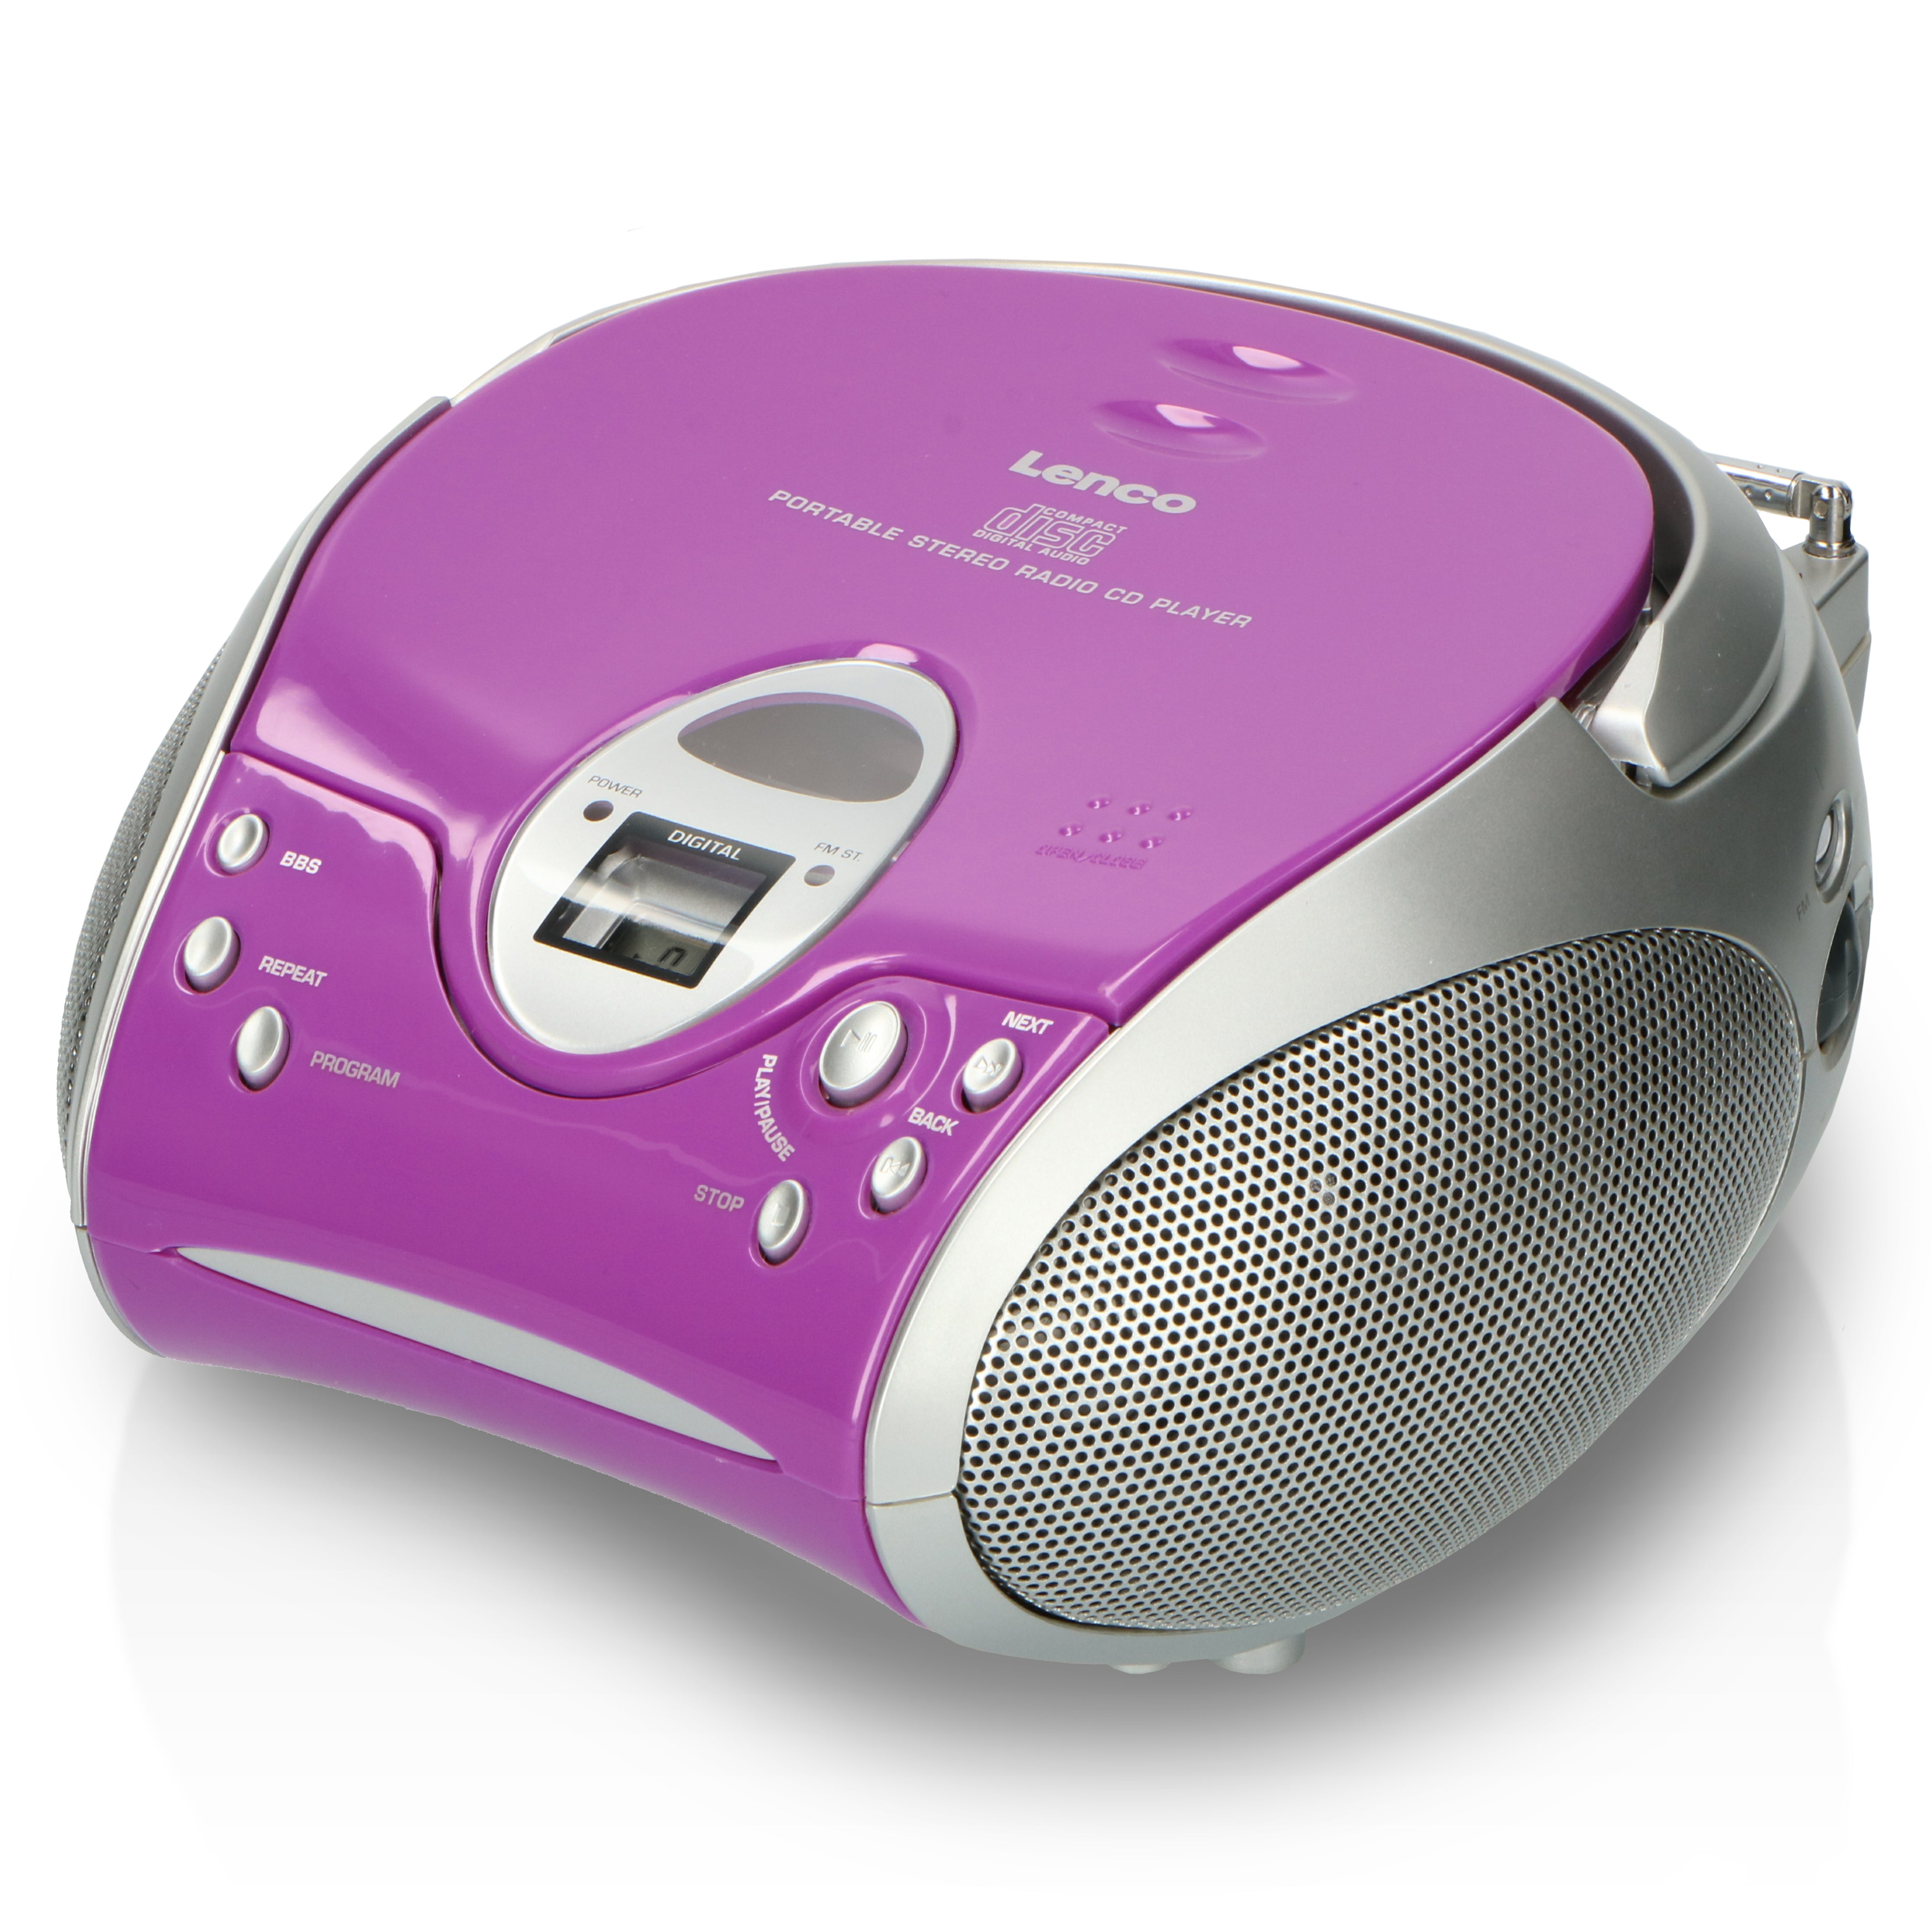 Lecteur laser CD portable - LENCO - SCD-24 - Violet - Radio FM - Batterie 6  x type C - Cdiscount TV Son Photo